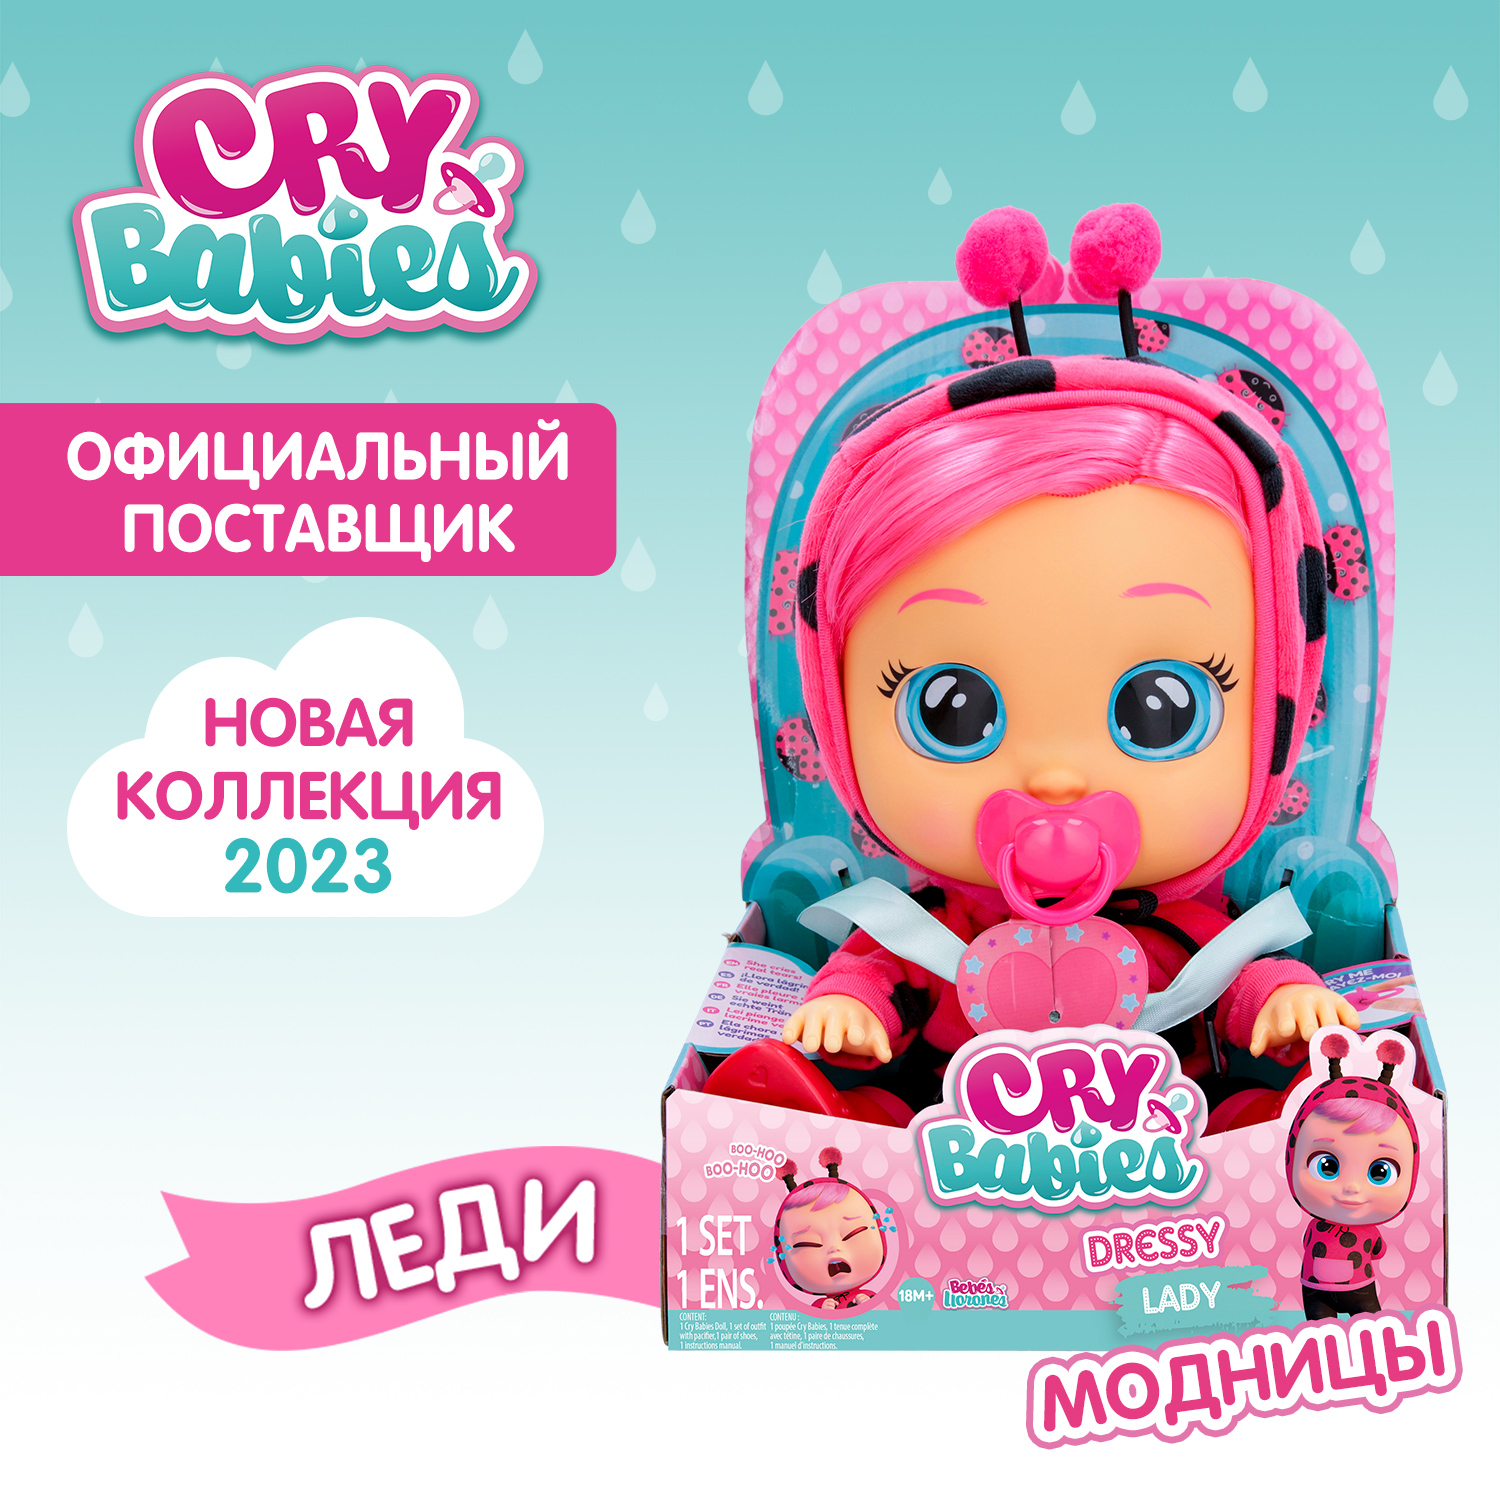 Кукла Cry Babies Леди Модница, интерактивная, плачущая, 40885 кукла интерактивная весна анна модница 42 см